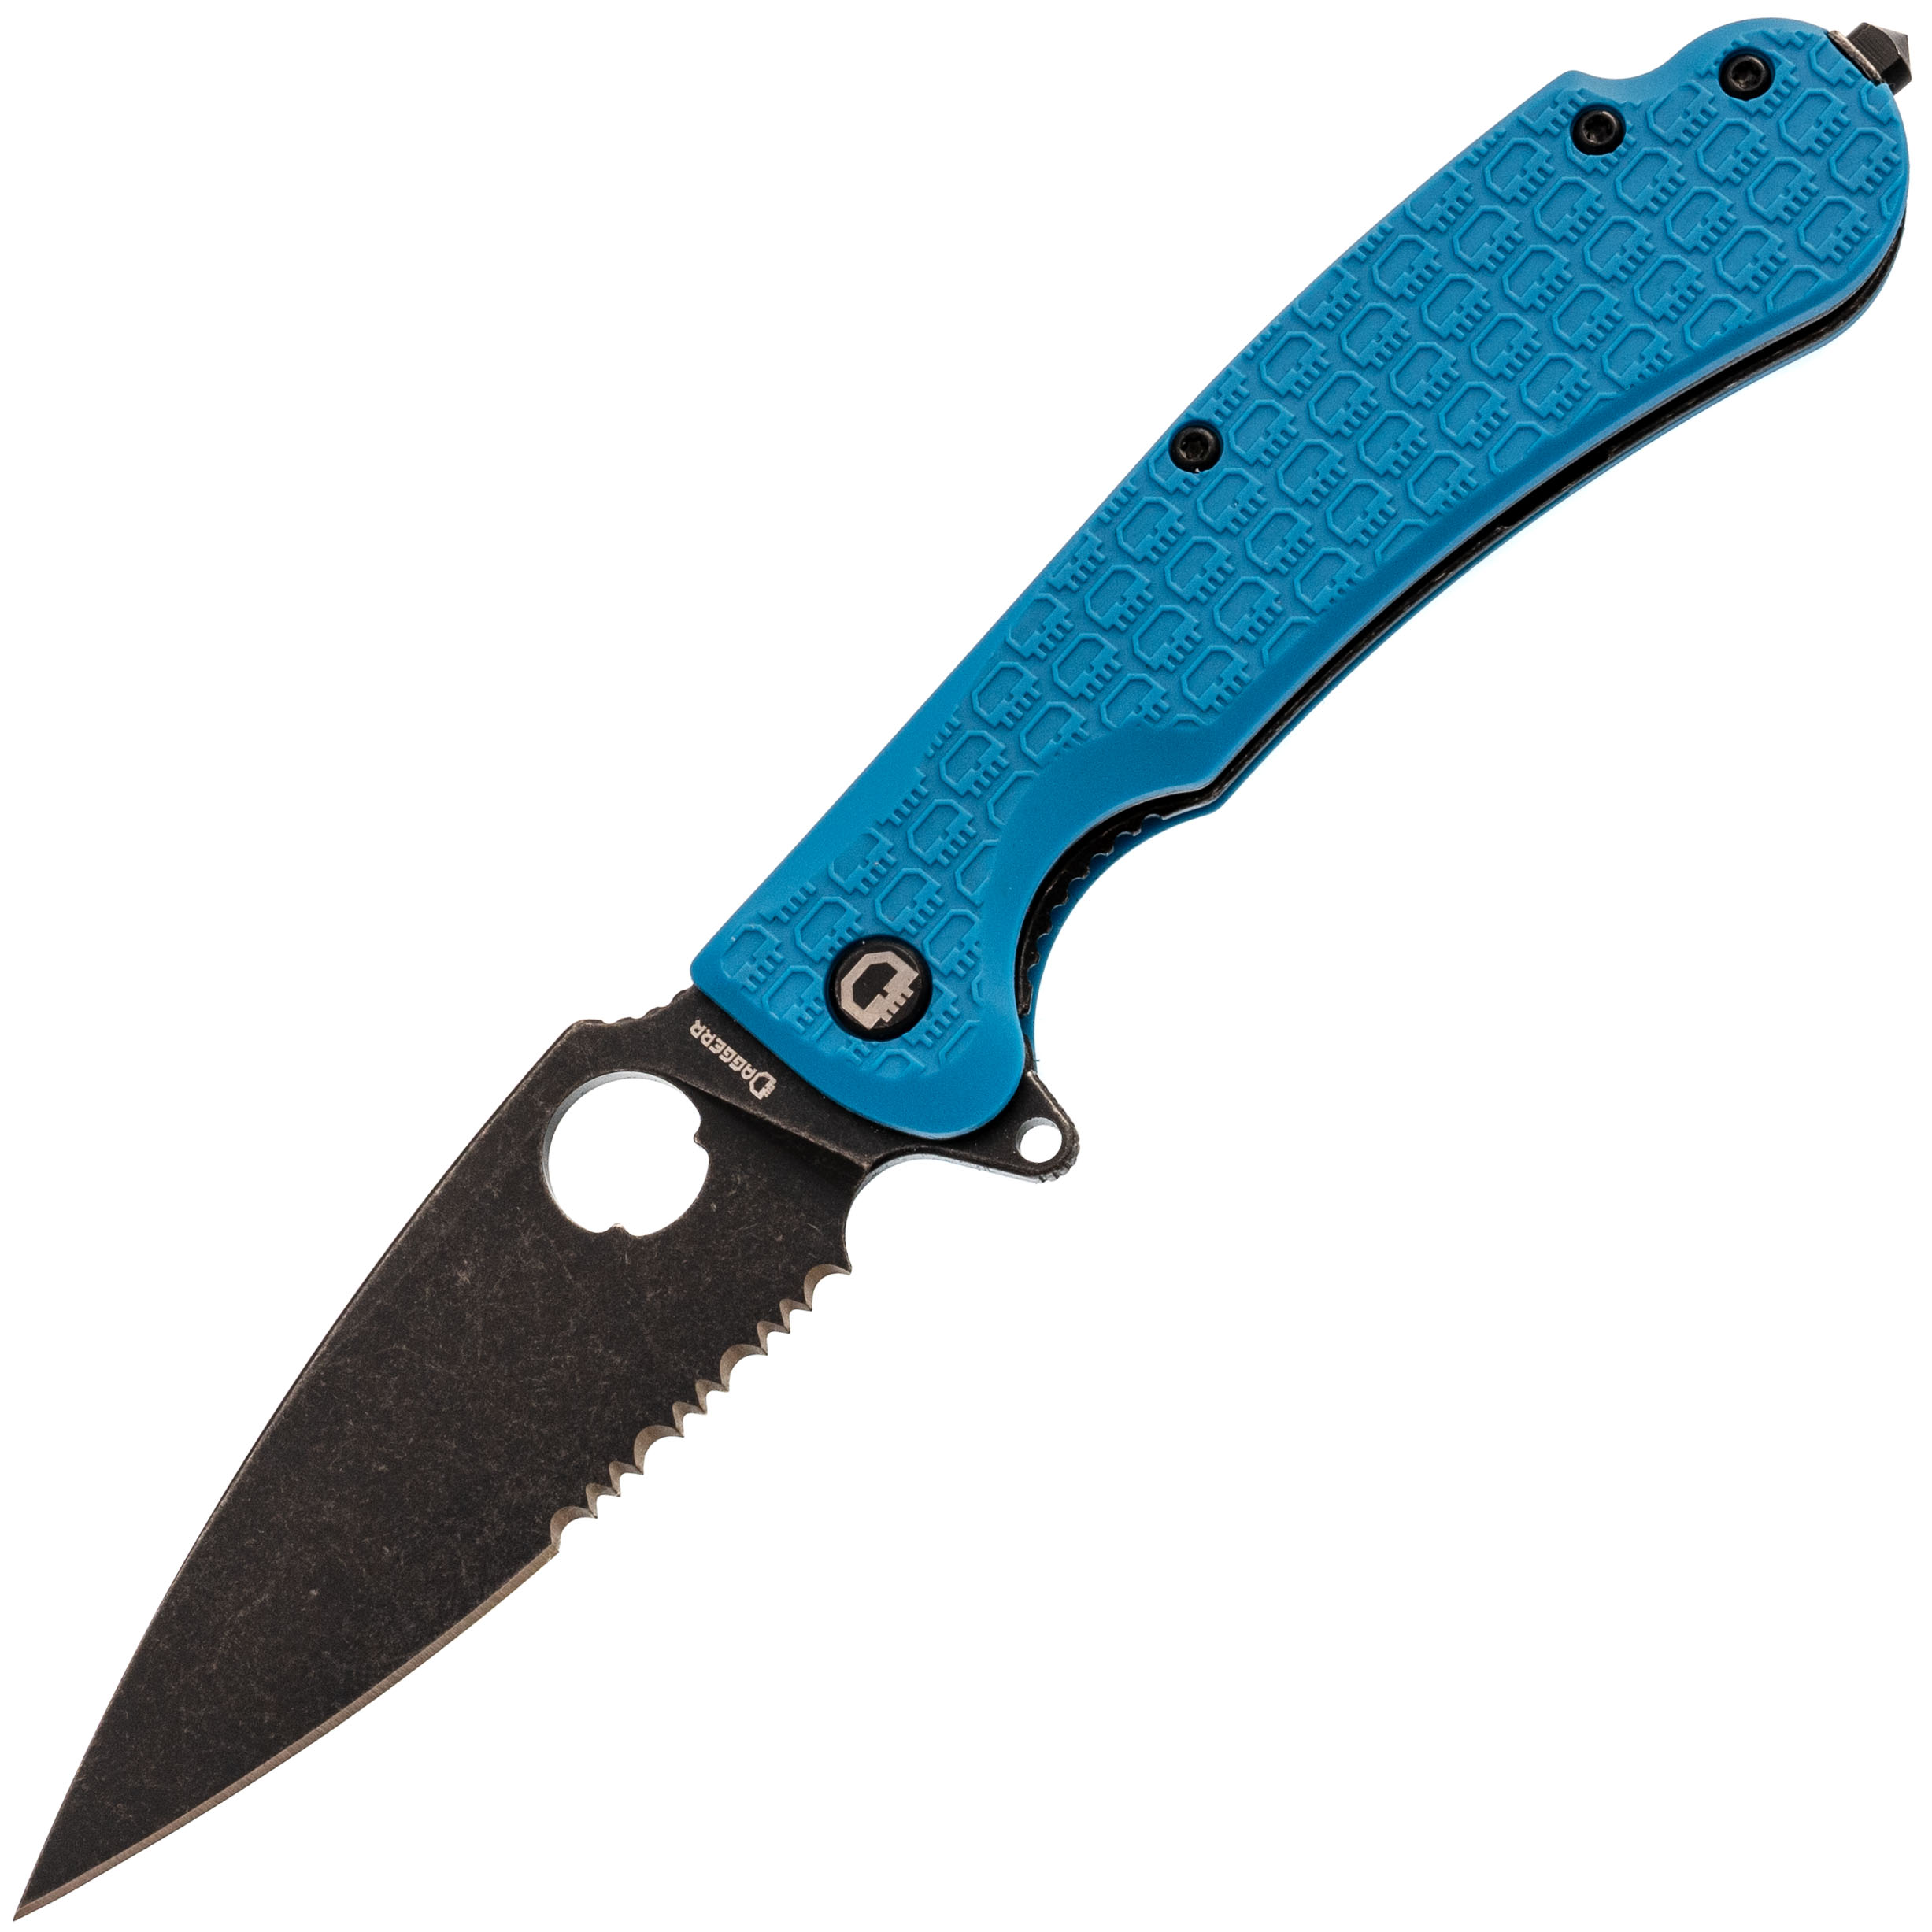 Складной нож Daggerr Resident Blue BW Serrated, сталь 8Cr14MoV, рукоять FRN, Бренды, DAGGERR